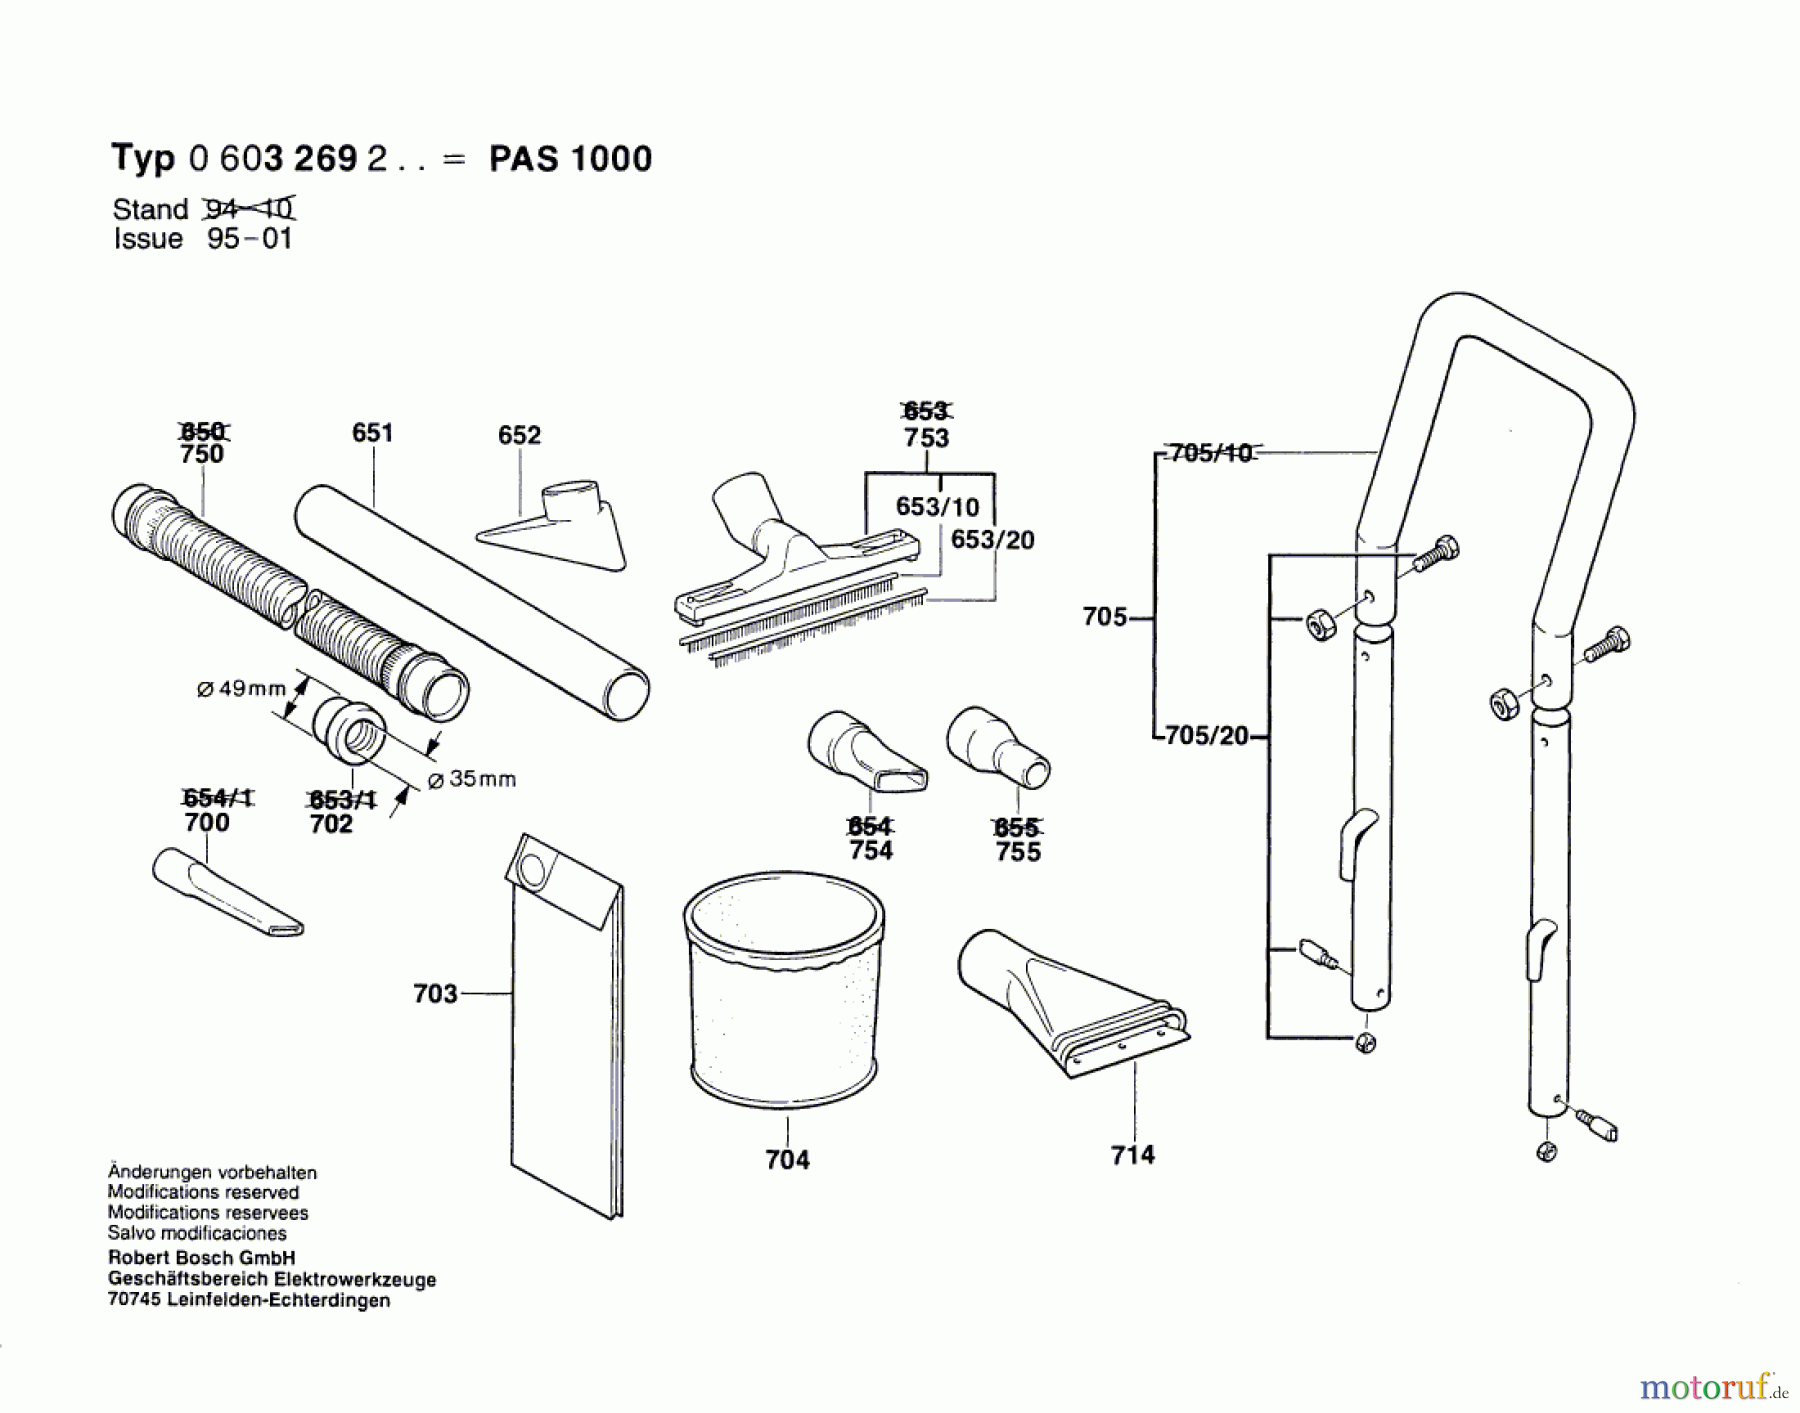  Bosch Werkzeug Allzwecksauger PAS 1000 Seite 2